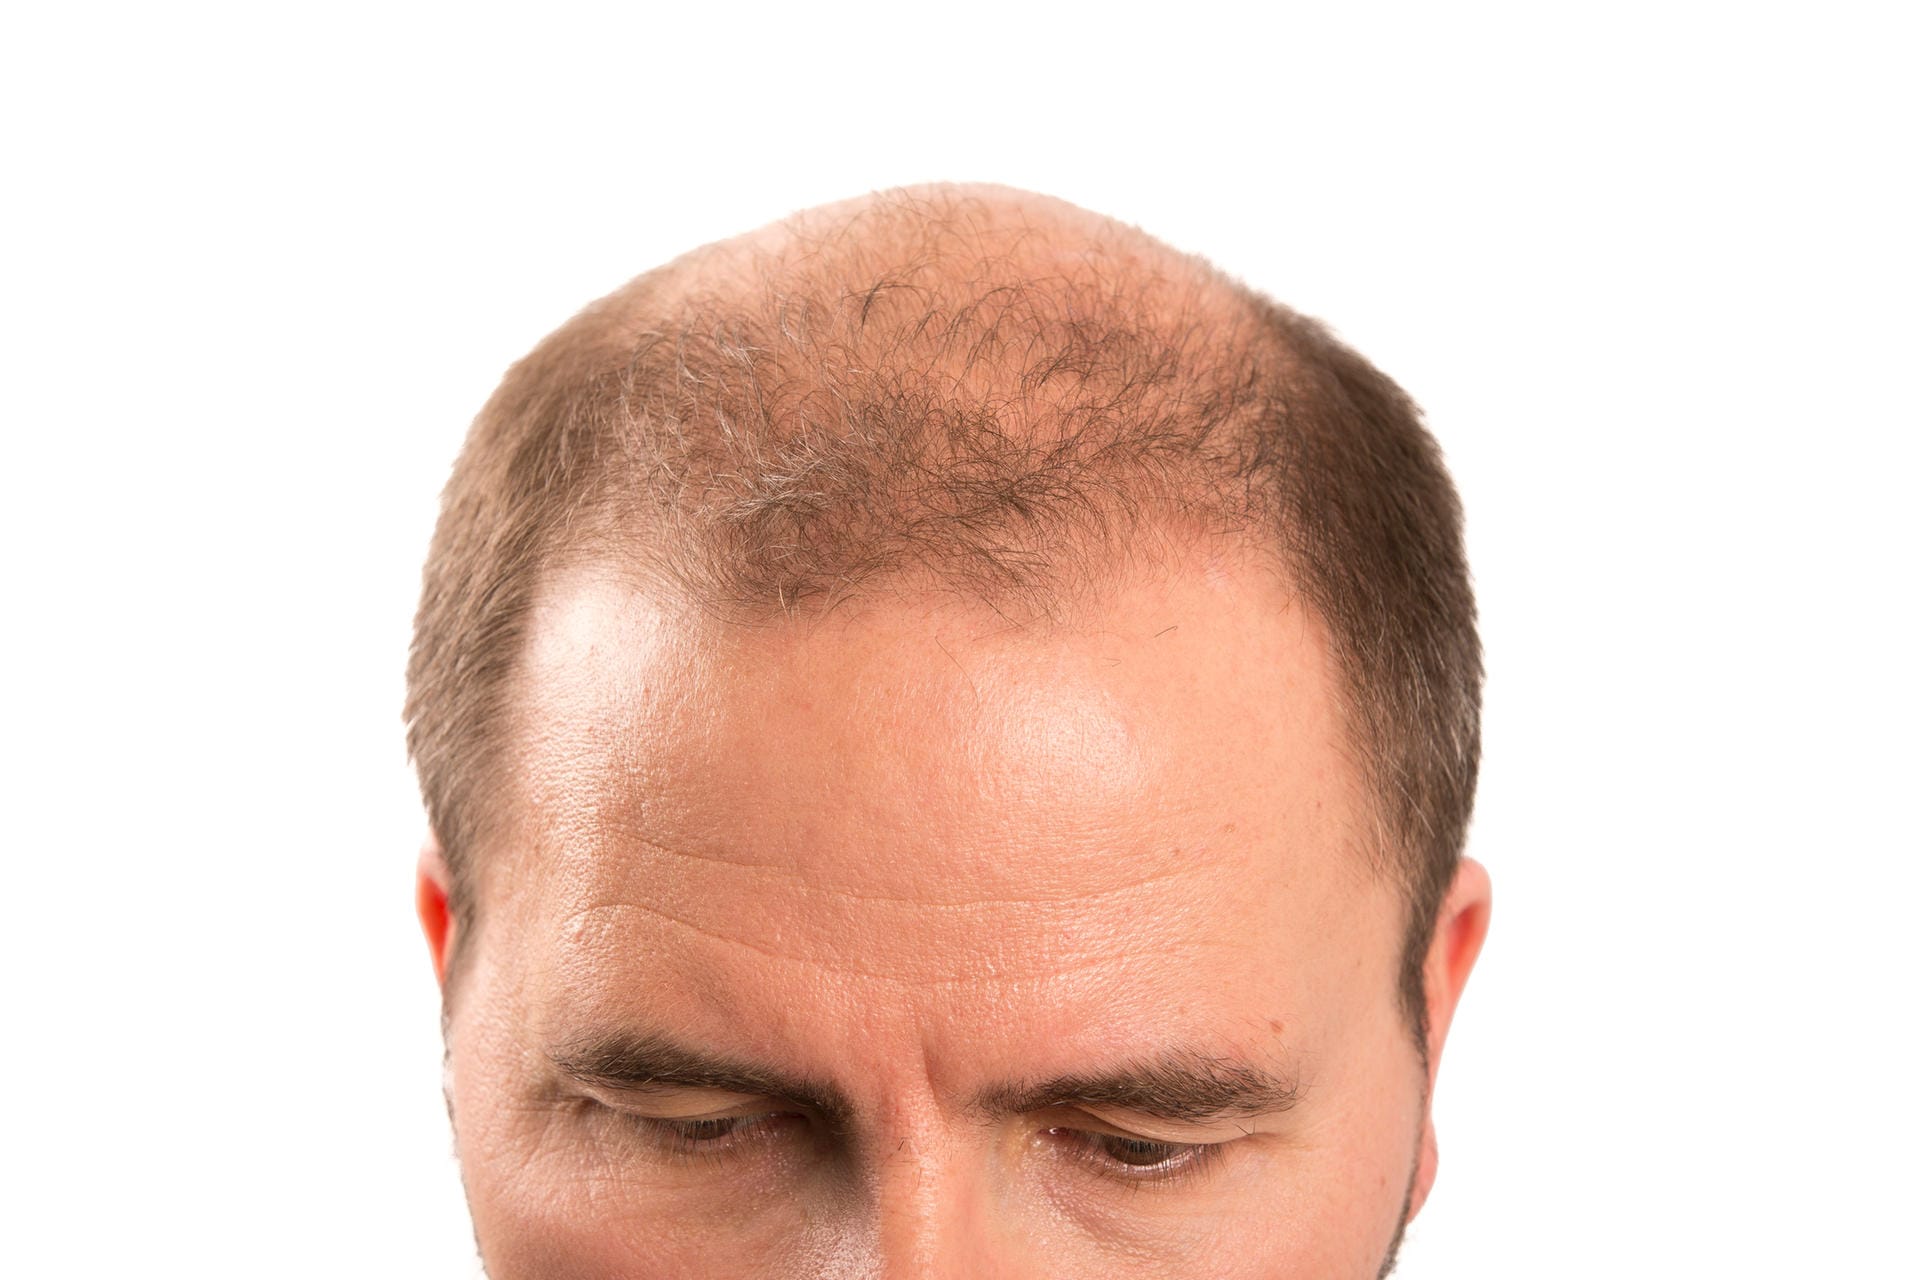 Auch wenn am Vorderkopf noch Haar vorhanden ist, genau dieses sollte für einen gediegenen Look raspelkurz geschnitten werden.